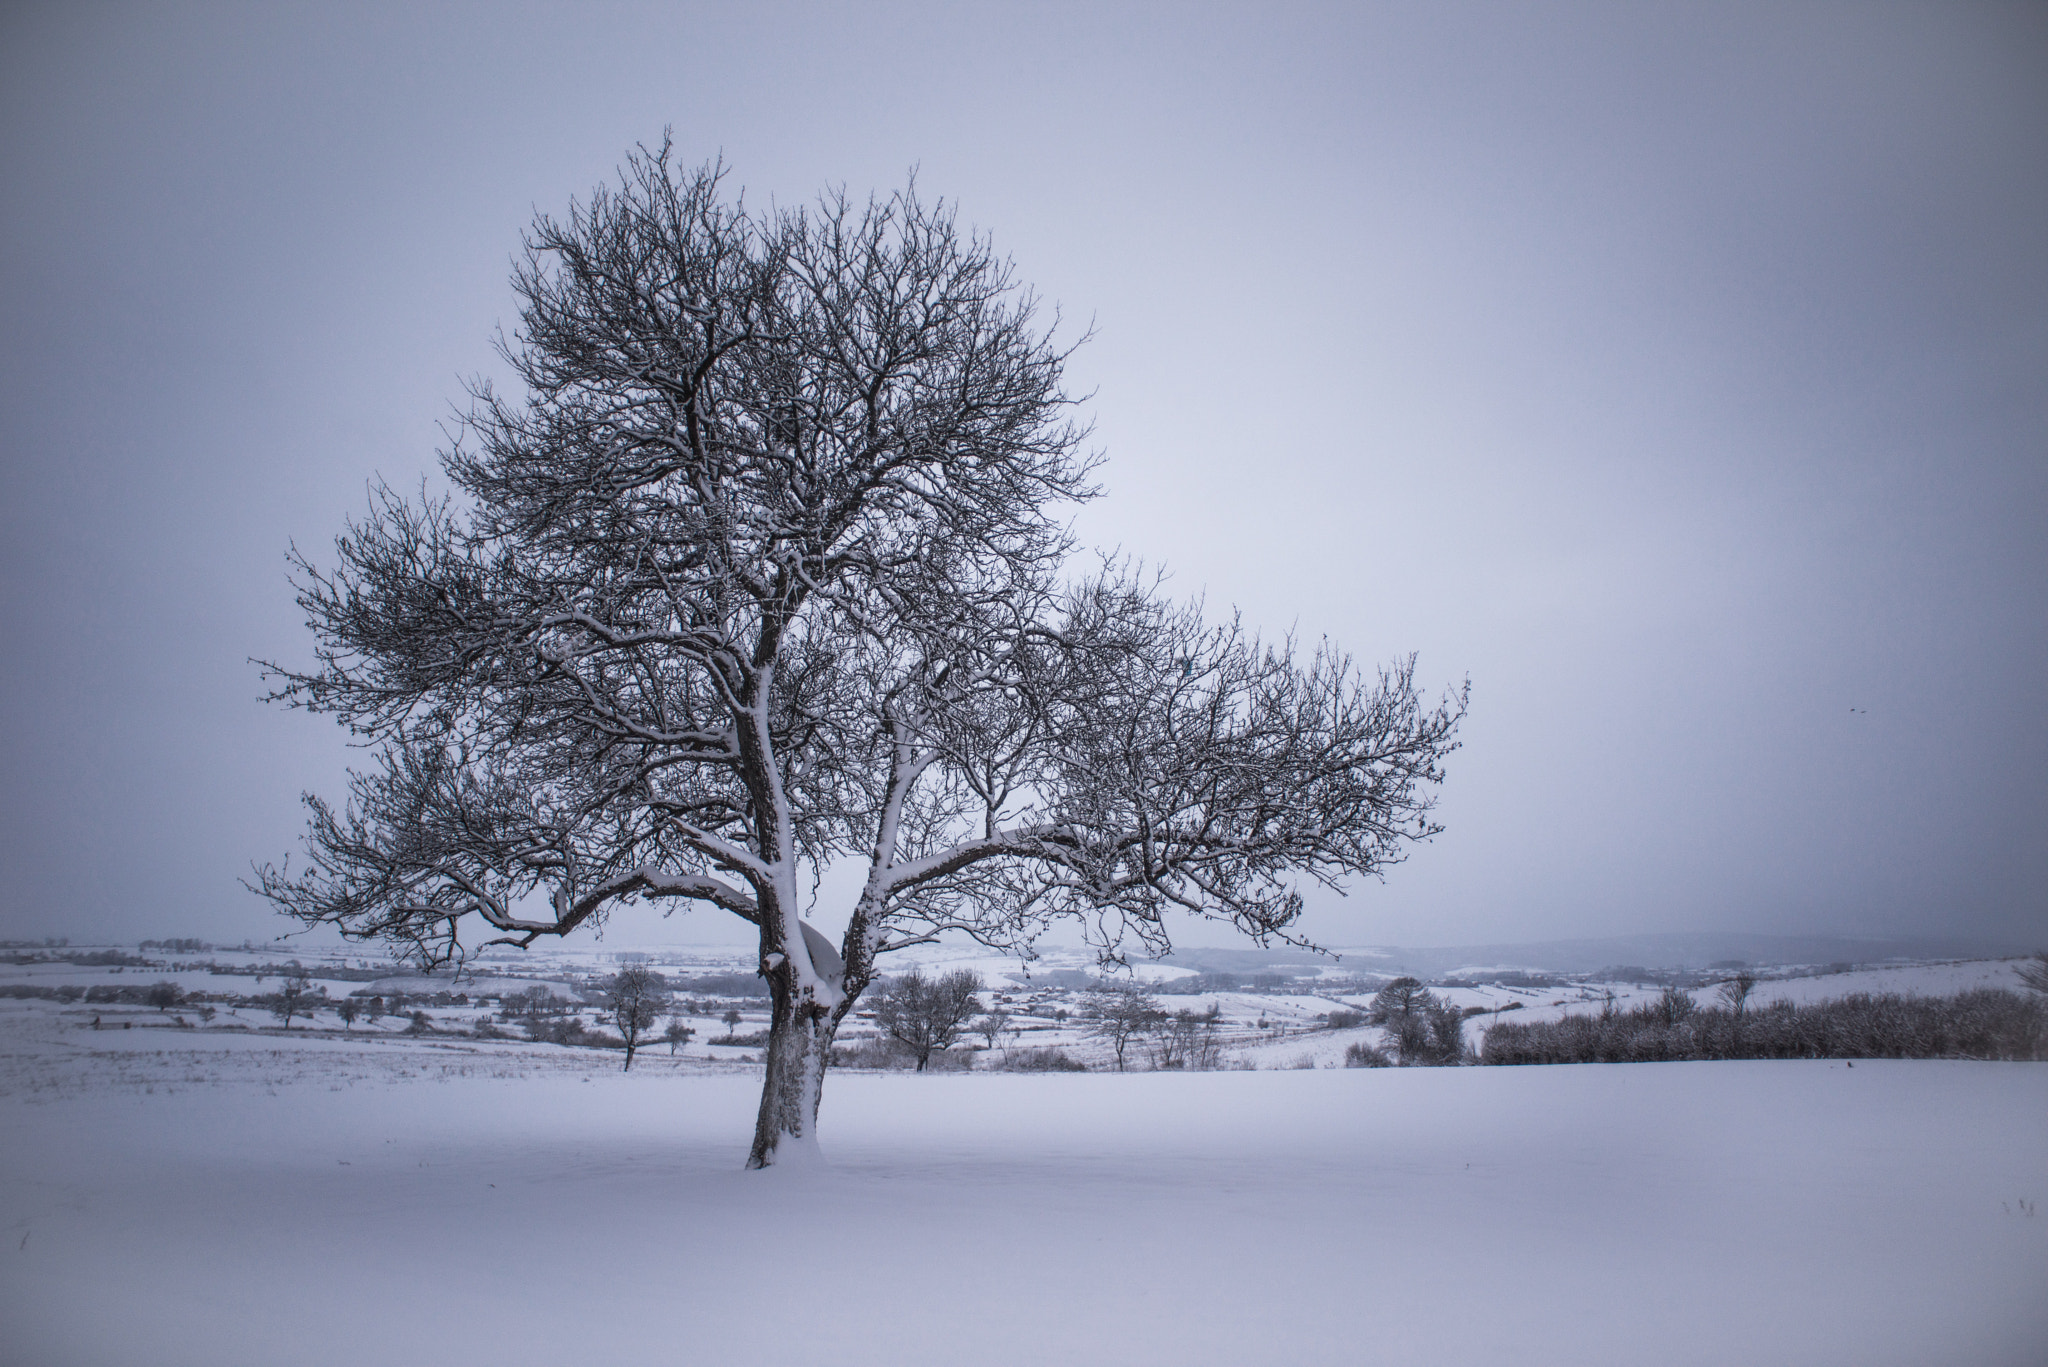 Nikon D810 sample photo. Tree at winter photography